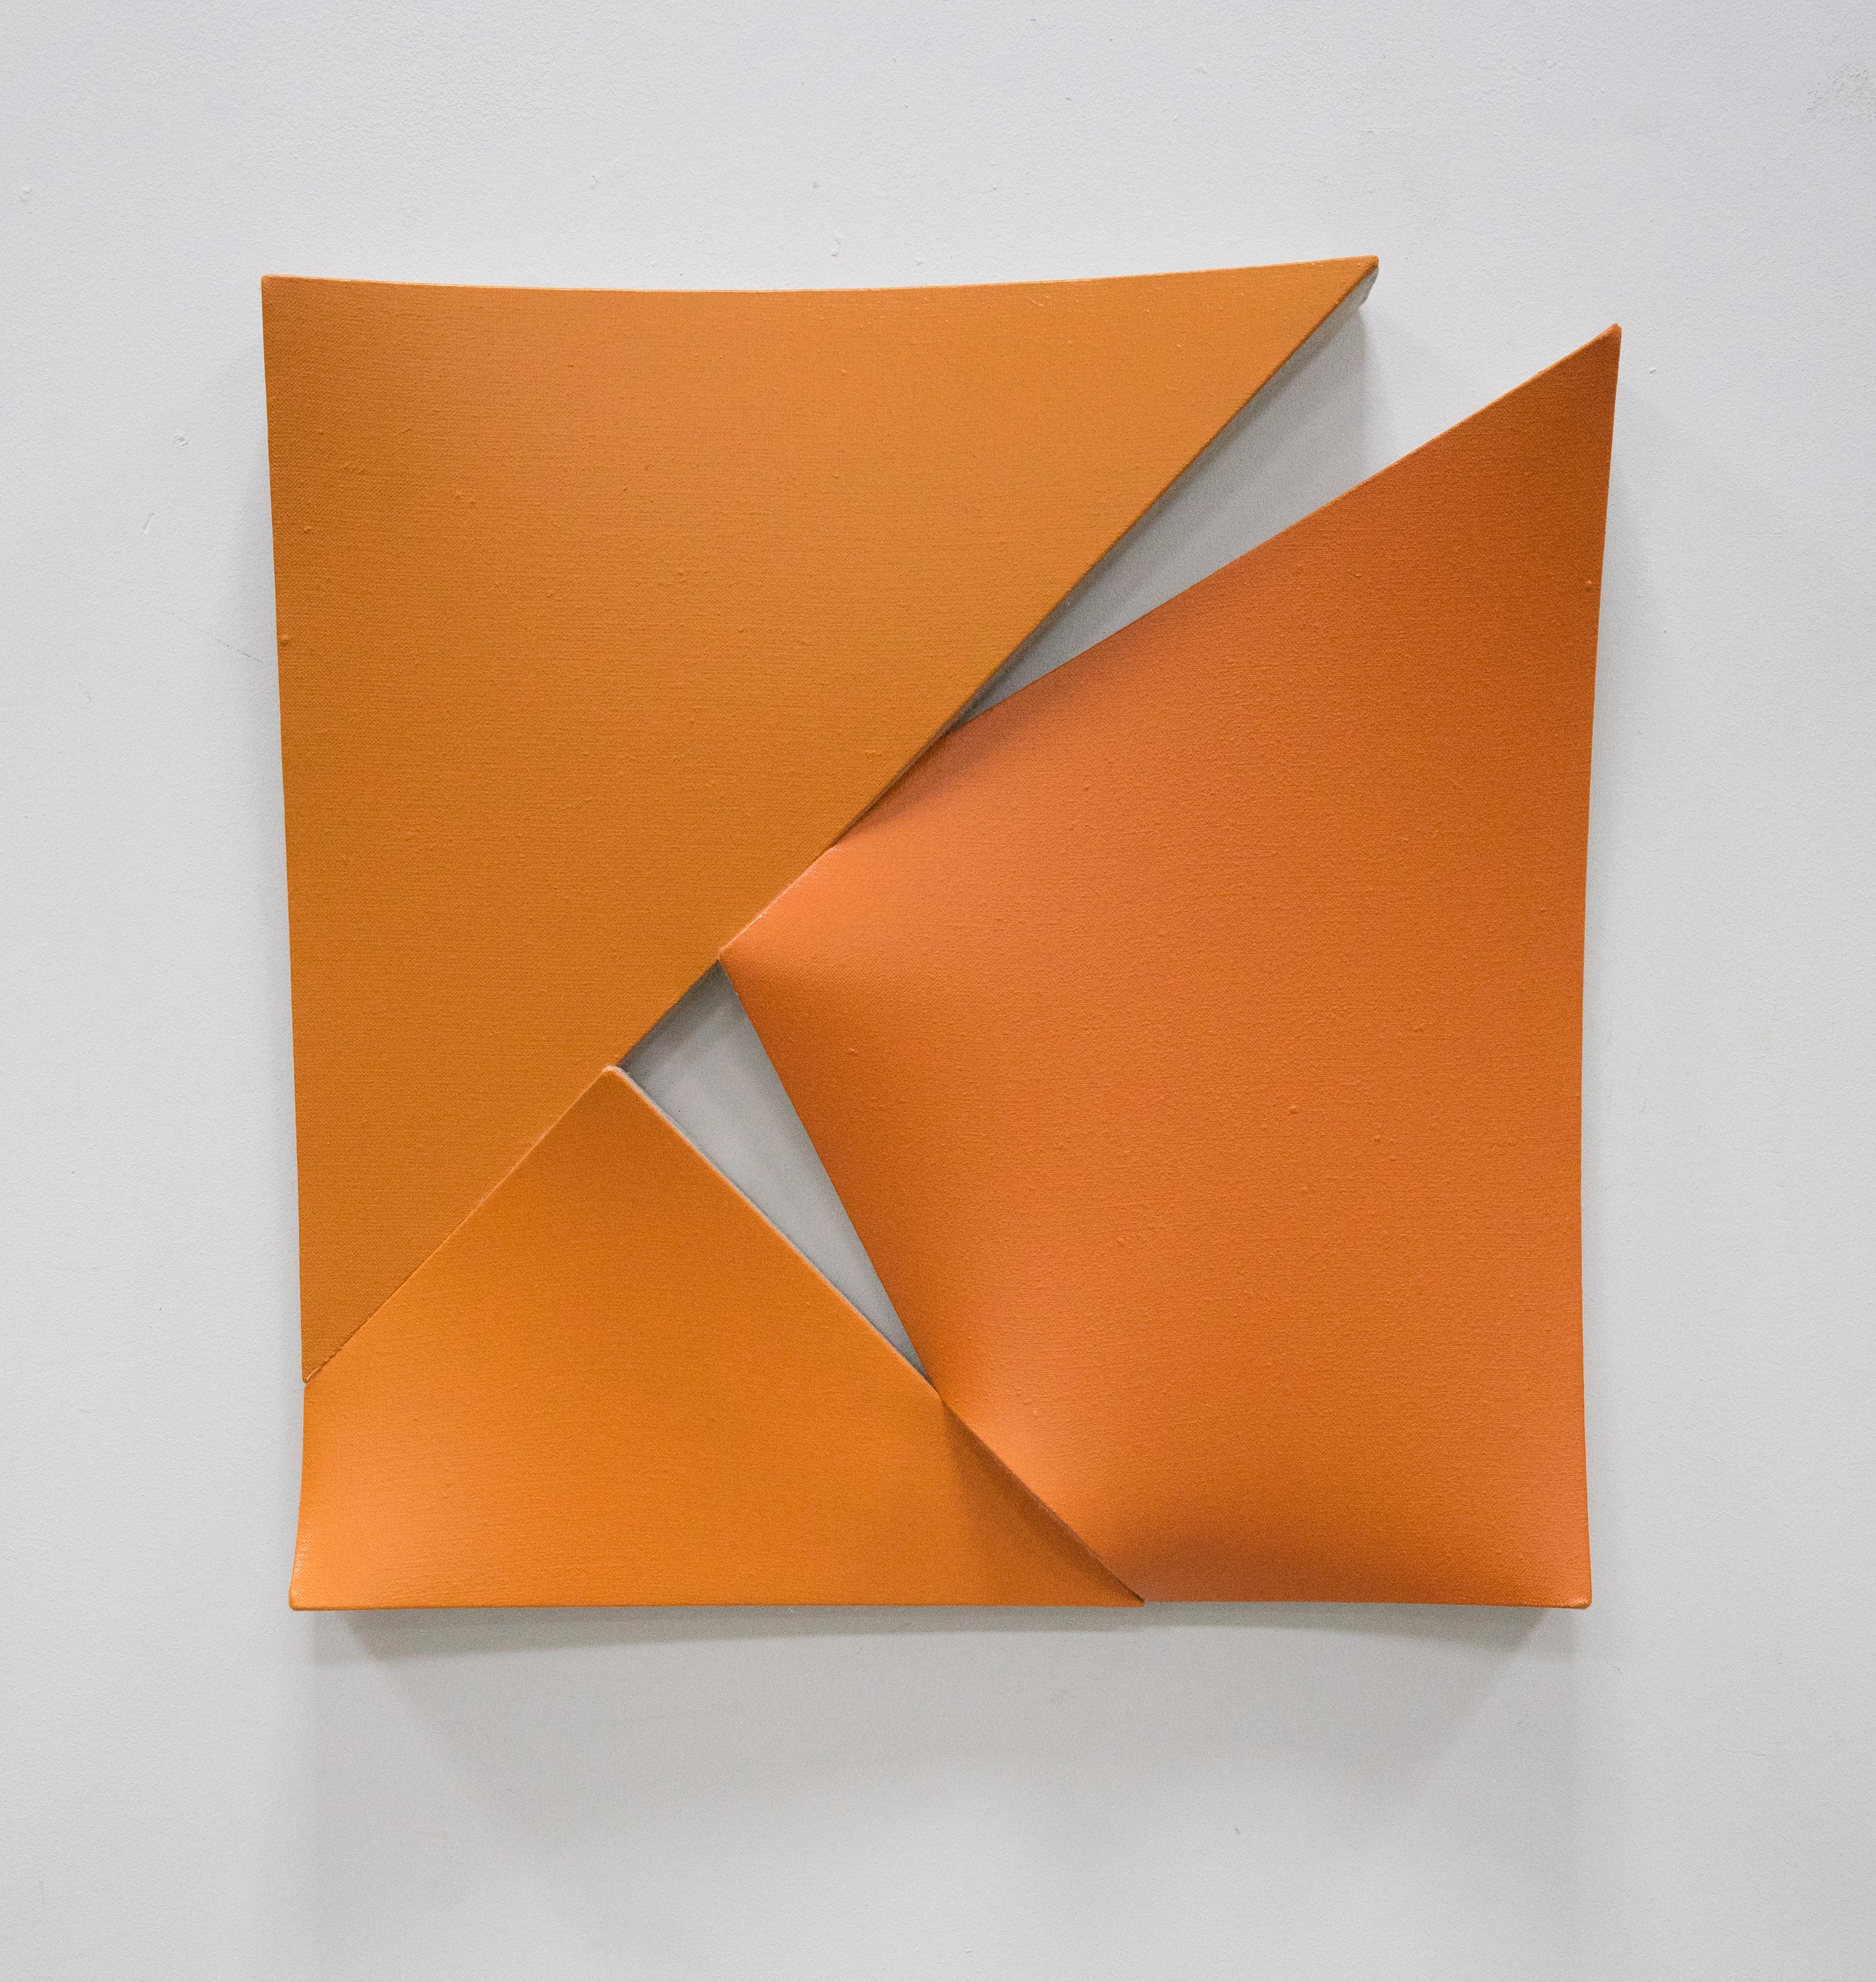 Jan Maarten Voskuil Abstract Sculpture - Cuts in Orange